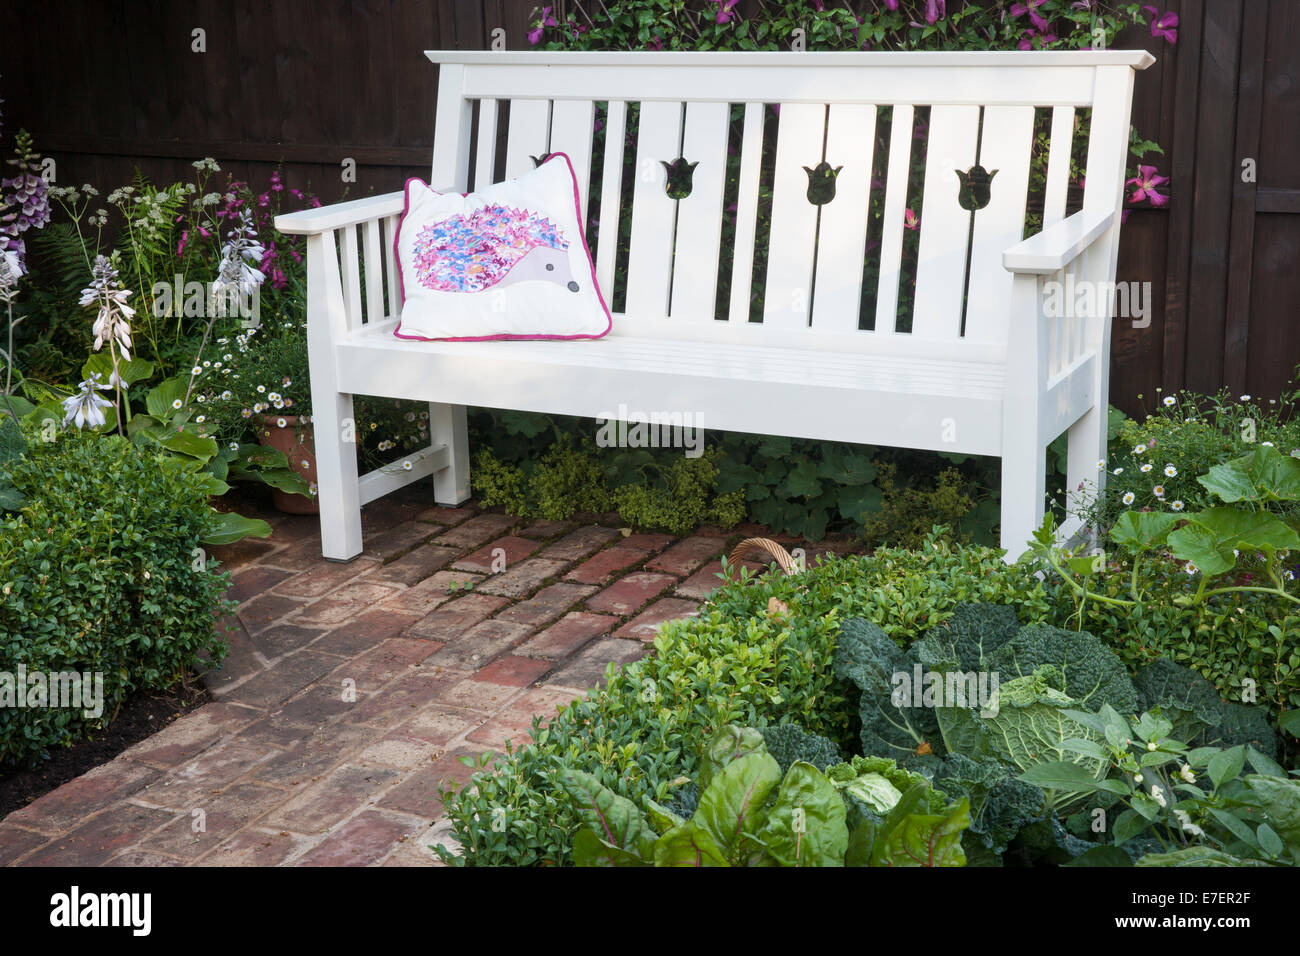 Garten - Igel - Blick auf Gartenbank Backstein Pflaster und Box-Hecke mit  Savoy Cabbage Mangold und squash Stockfotografie - Alamy